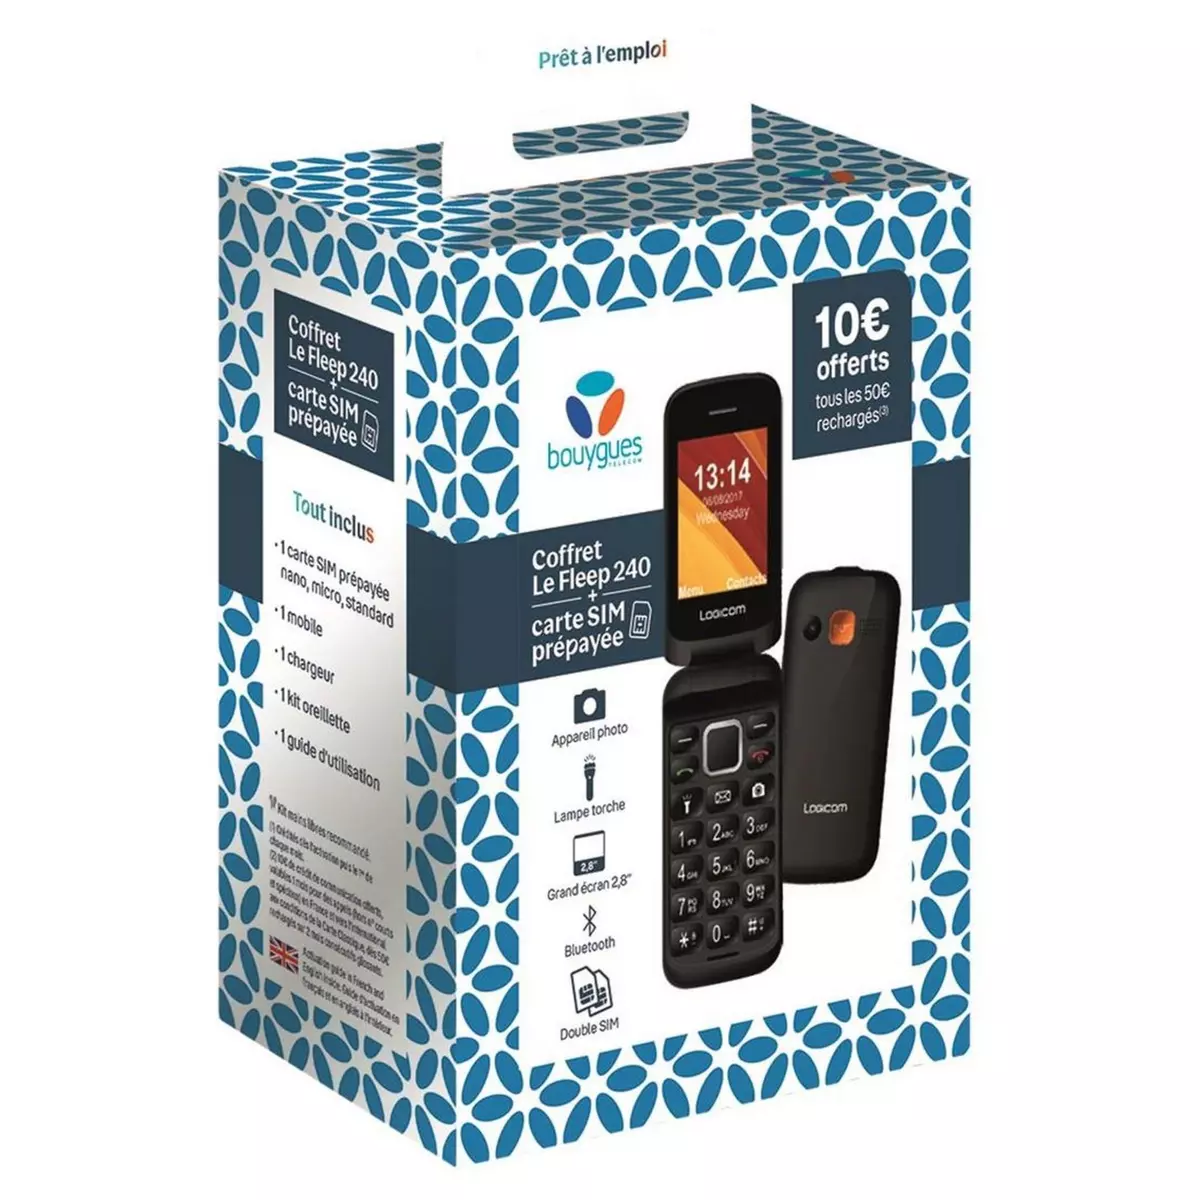 LOGICOM Coffret mobile Le Fleep 240 noir + 1 carte SIM prépayée + 1 chargeur + 1 kit oreillette + guide d'utilisation